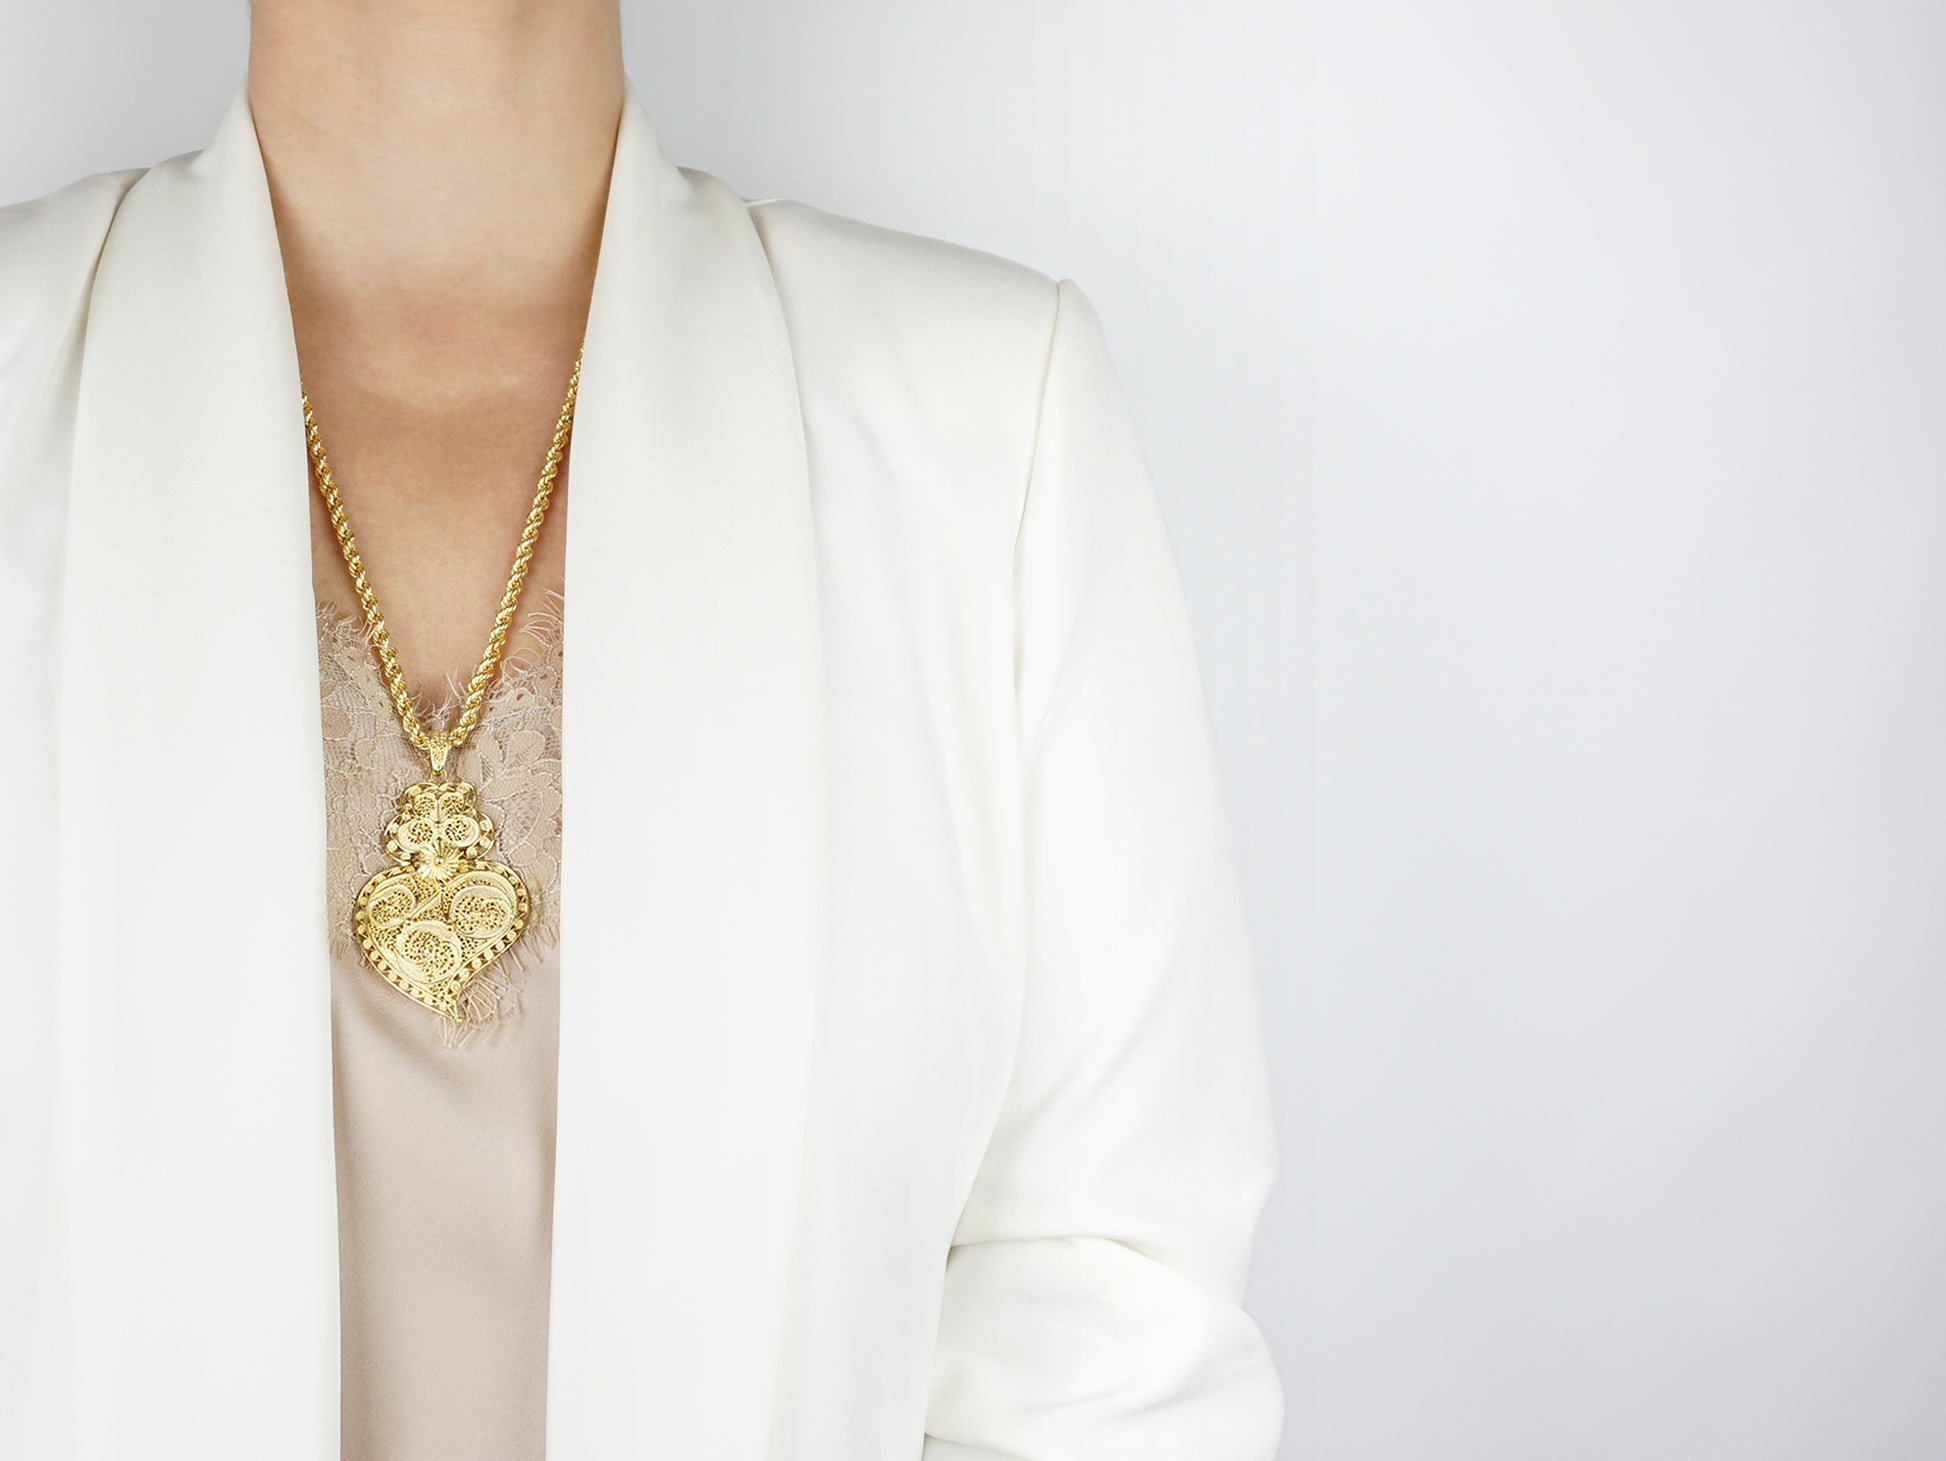 Colar "Corda" com Coração Moldura Grande, Filigrana Portuguesa, Prata de Lei 925 Dourada - Mulher a usar colar